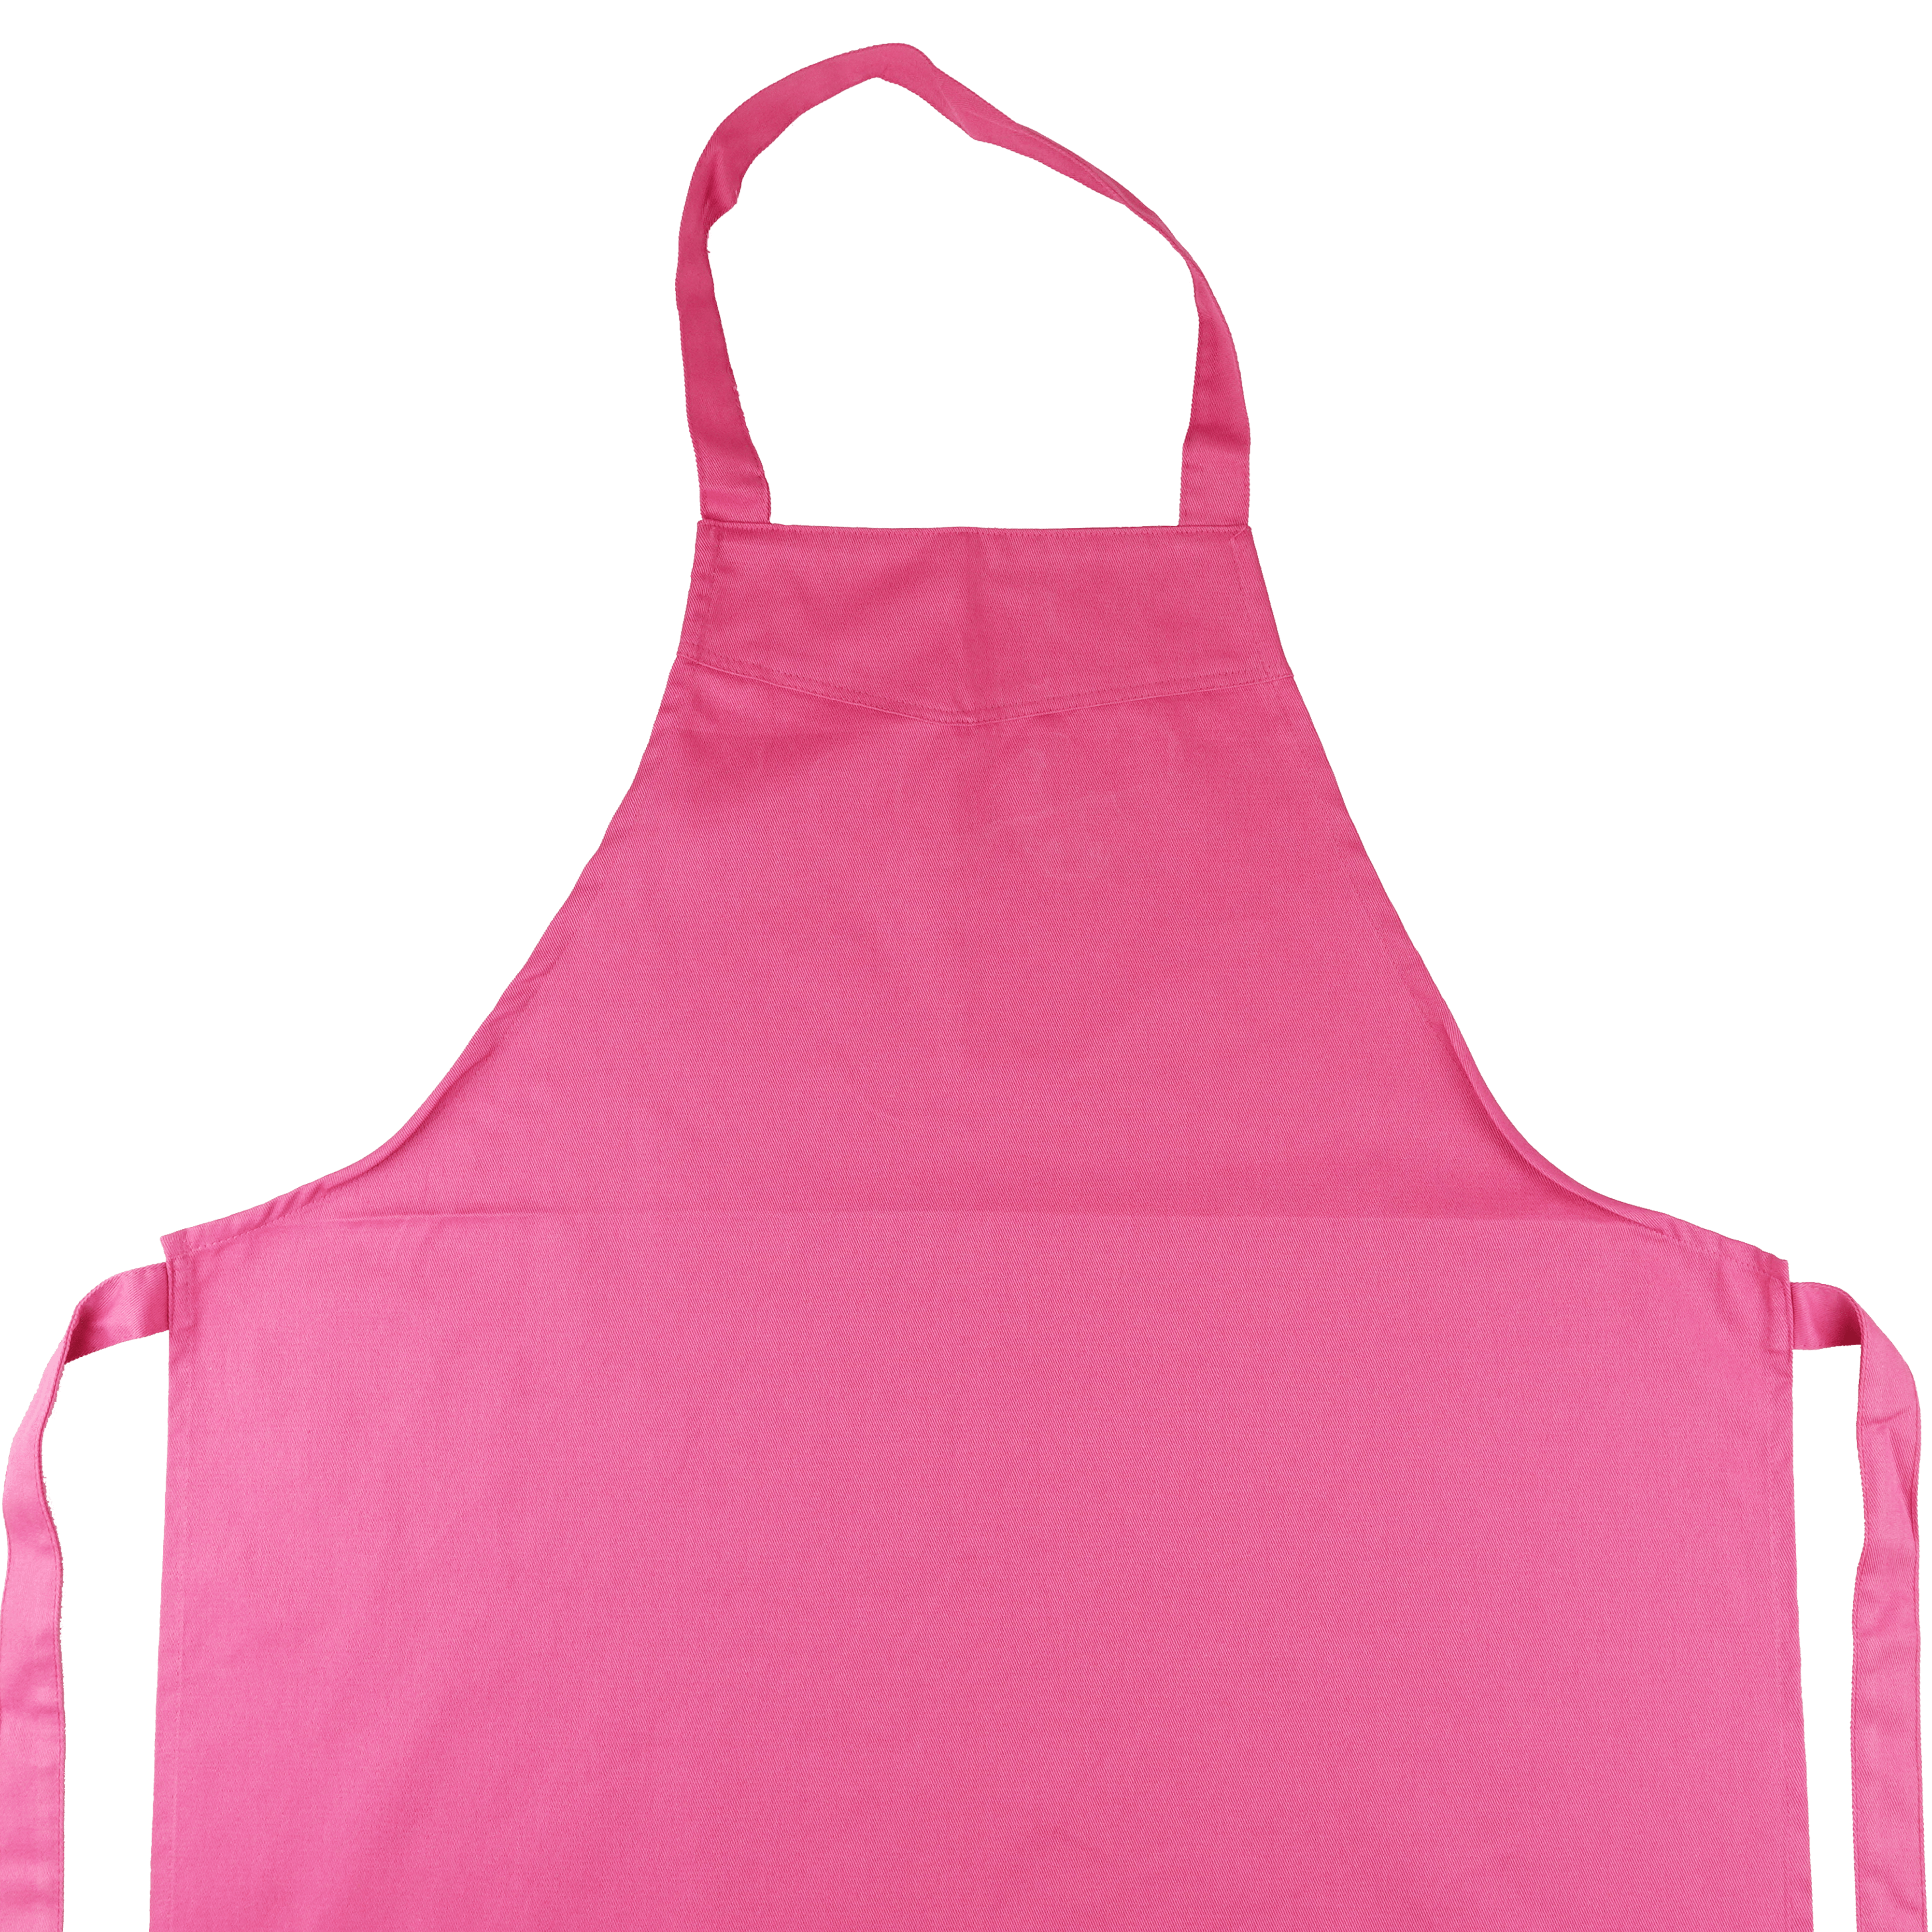 Kinder Schürze Malschürze Kochschürze mit Namen personalisiert 3-6 Jahre pink